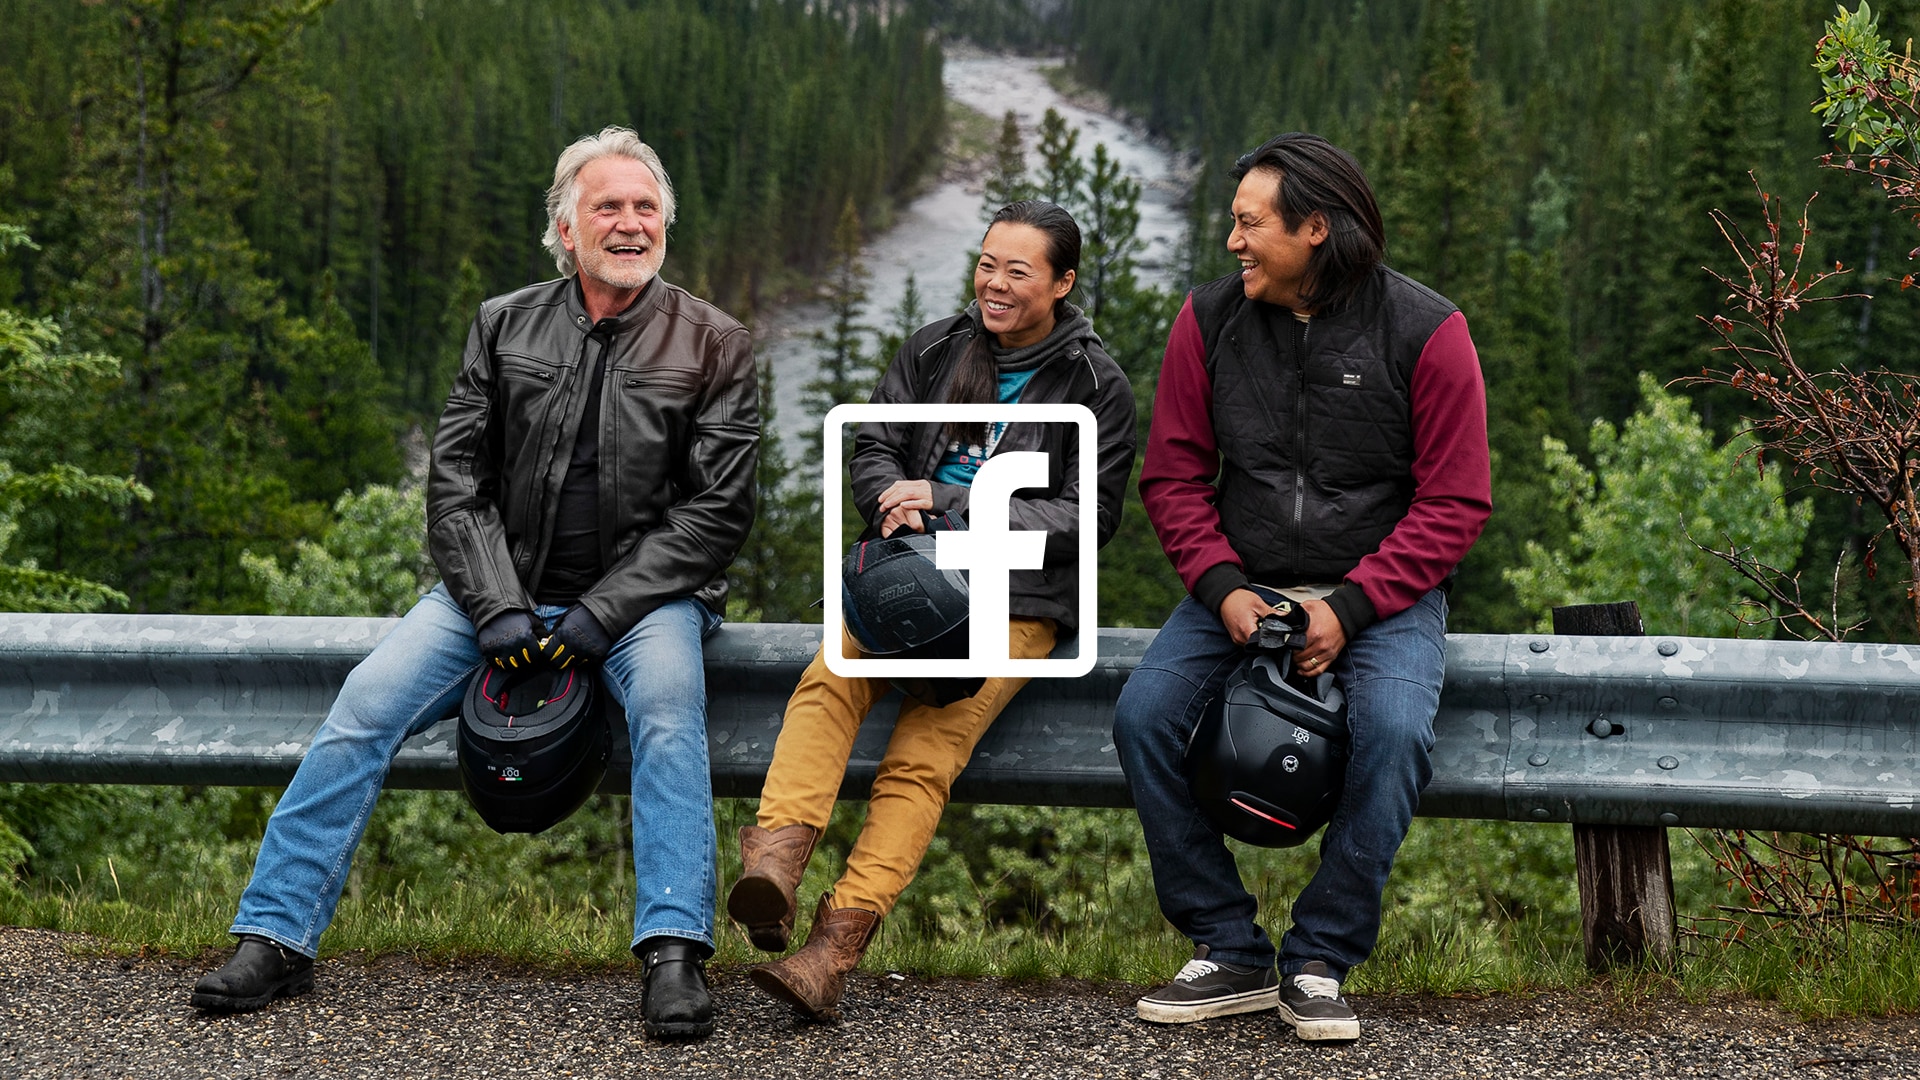 Τρία άτομα που γελούν και μιλάνε με το λογότυπο του Facebook πάνω από την εικόνα